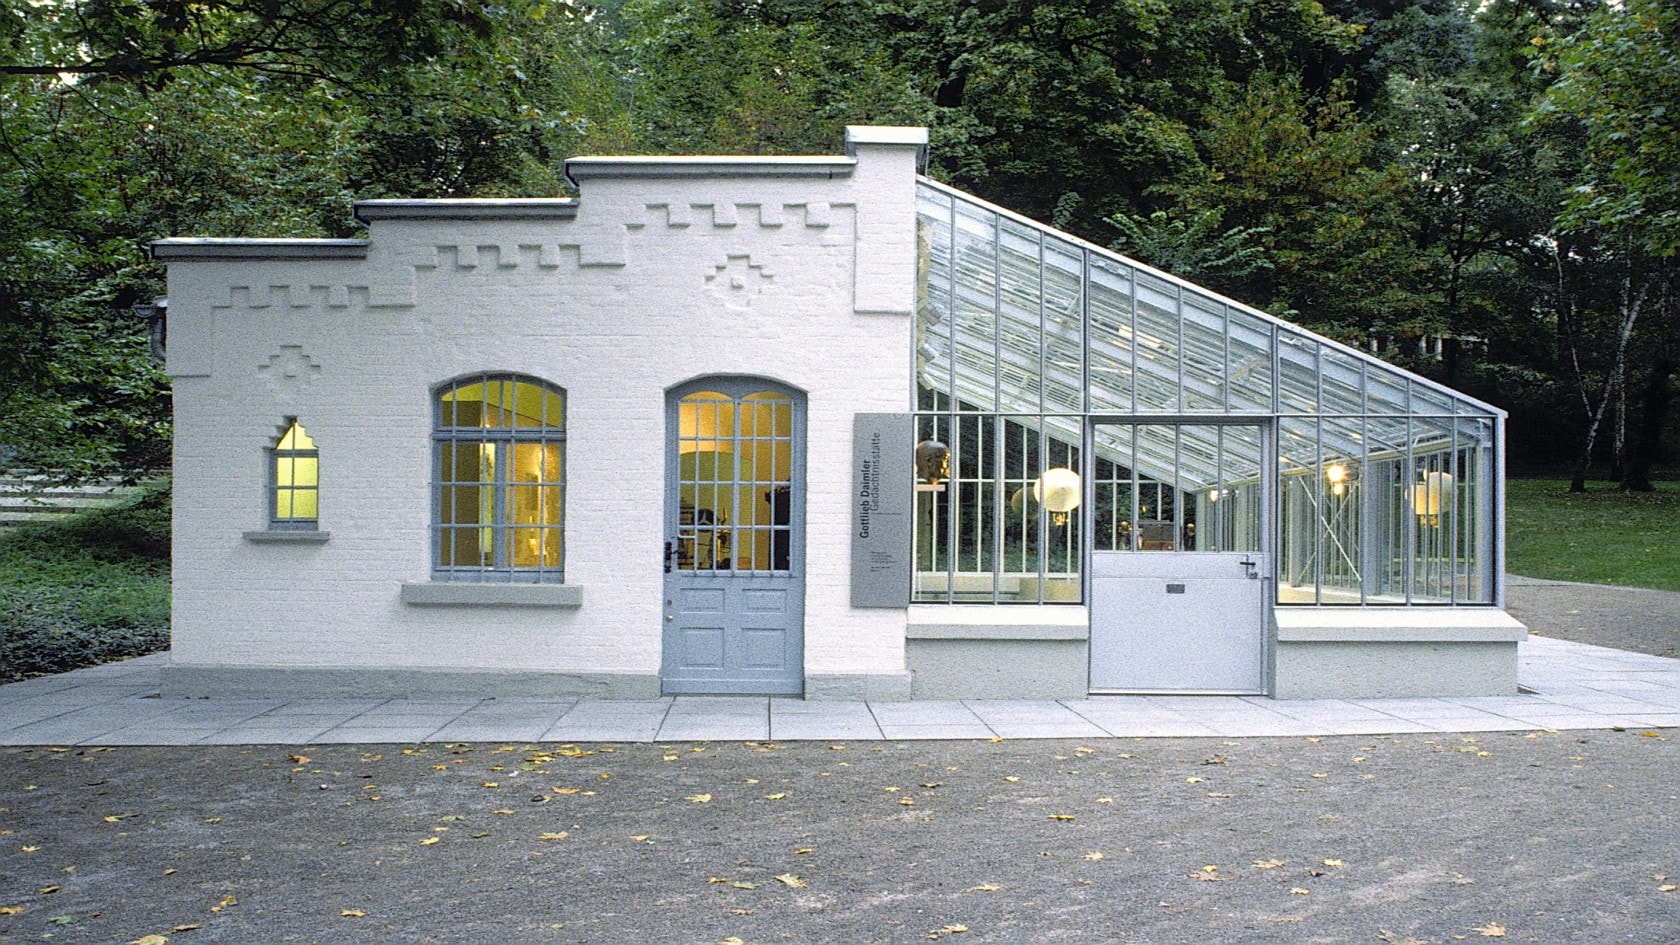 Gottlieb-Daimler-Gedächtnisstätte in Bad Cannstatt (die rekonstruierte Versuchswerkstatt Gottlieb Daimlers). Hier wurde der erste leichte, schnelllaufende Fahrzeugmotor der Welt geschaffen. Im Jahr 1984 wurde das Gartenhaus restauriert und der Öffentlichkeit zugänglich gemacht.